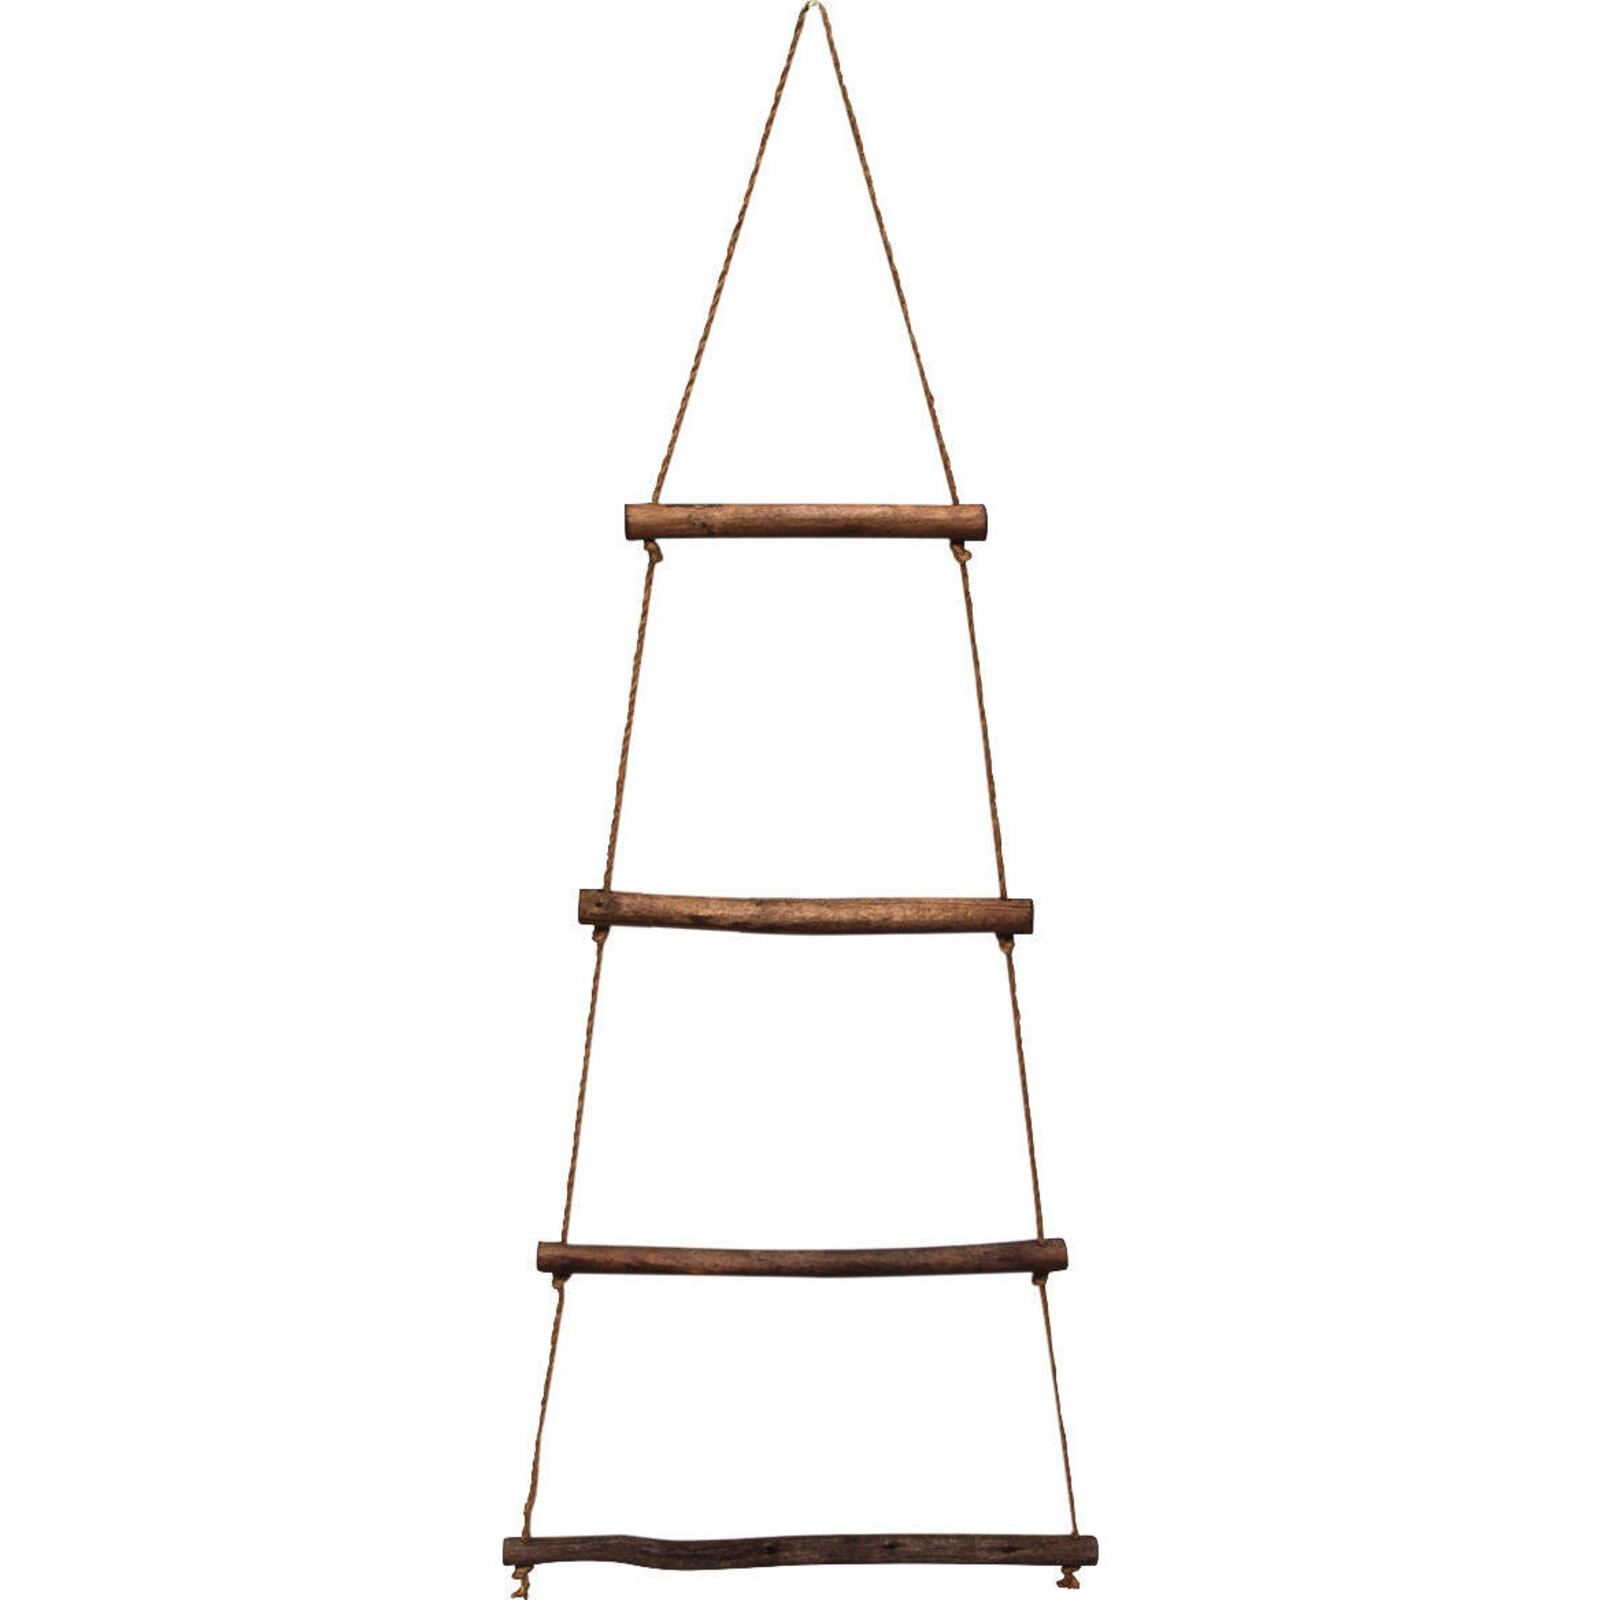 Hanging Rope Ladder